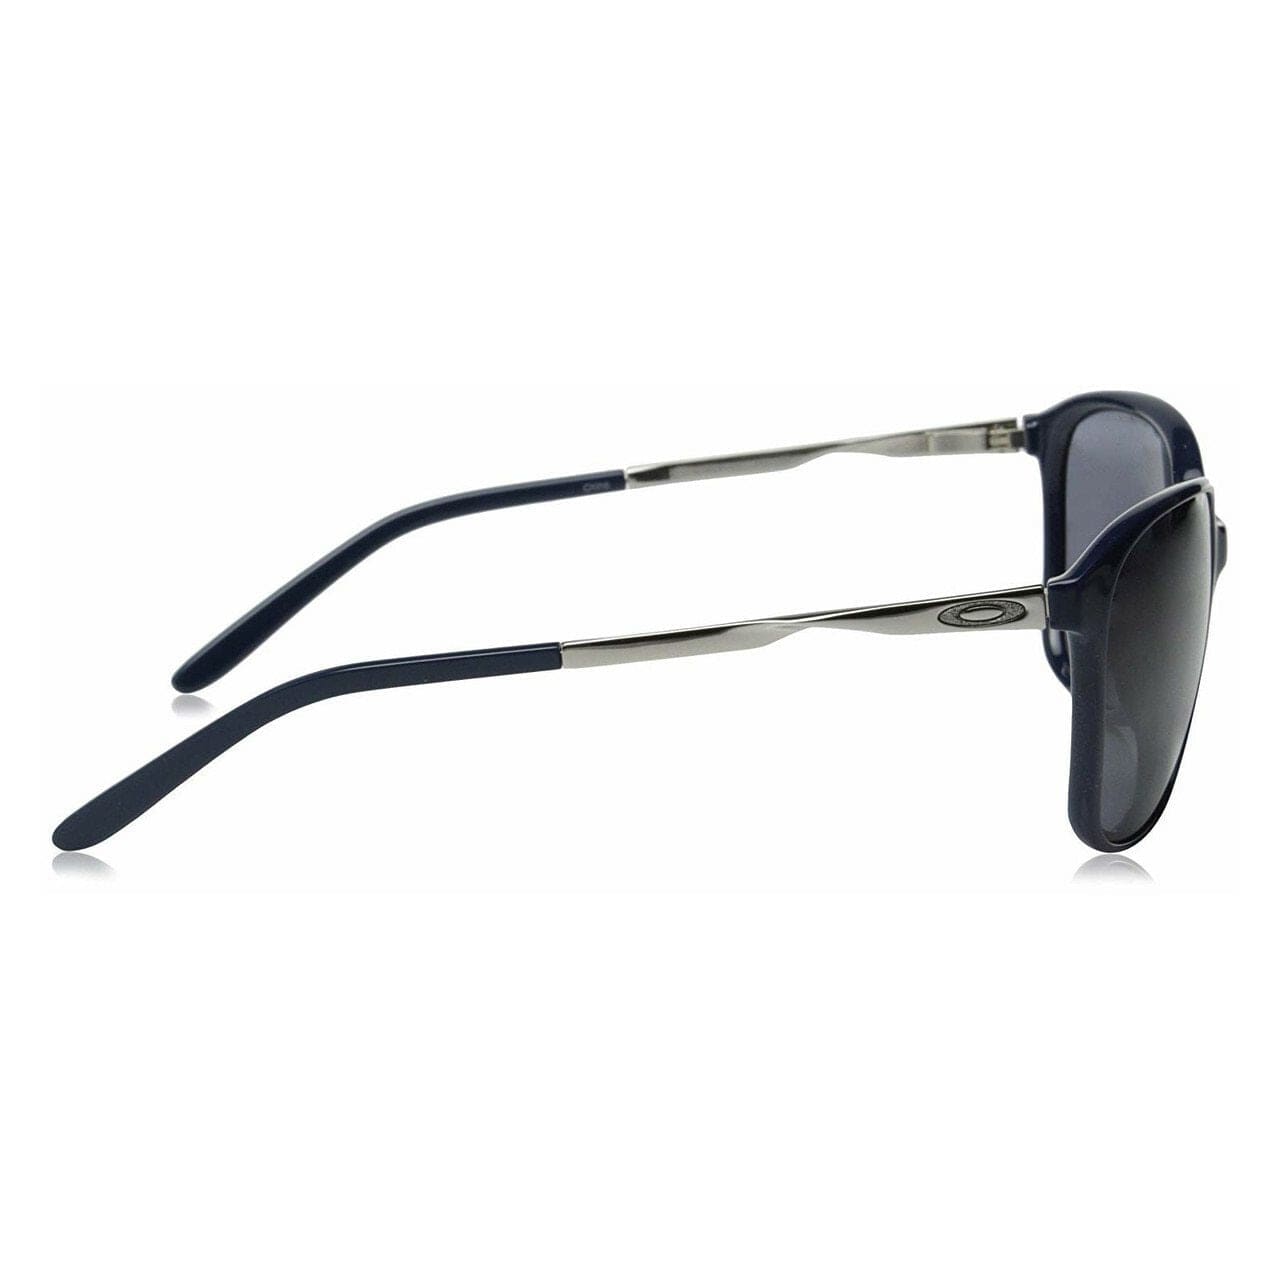 Oakley OO9291-07 Game Changer Navy Chrome Oversize Grey Lenses Sunglasses 888392072467